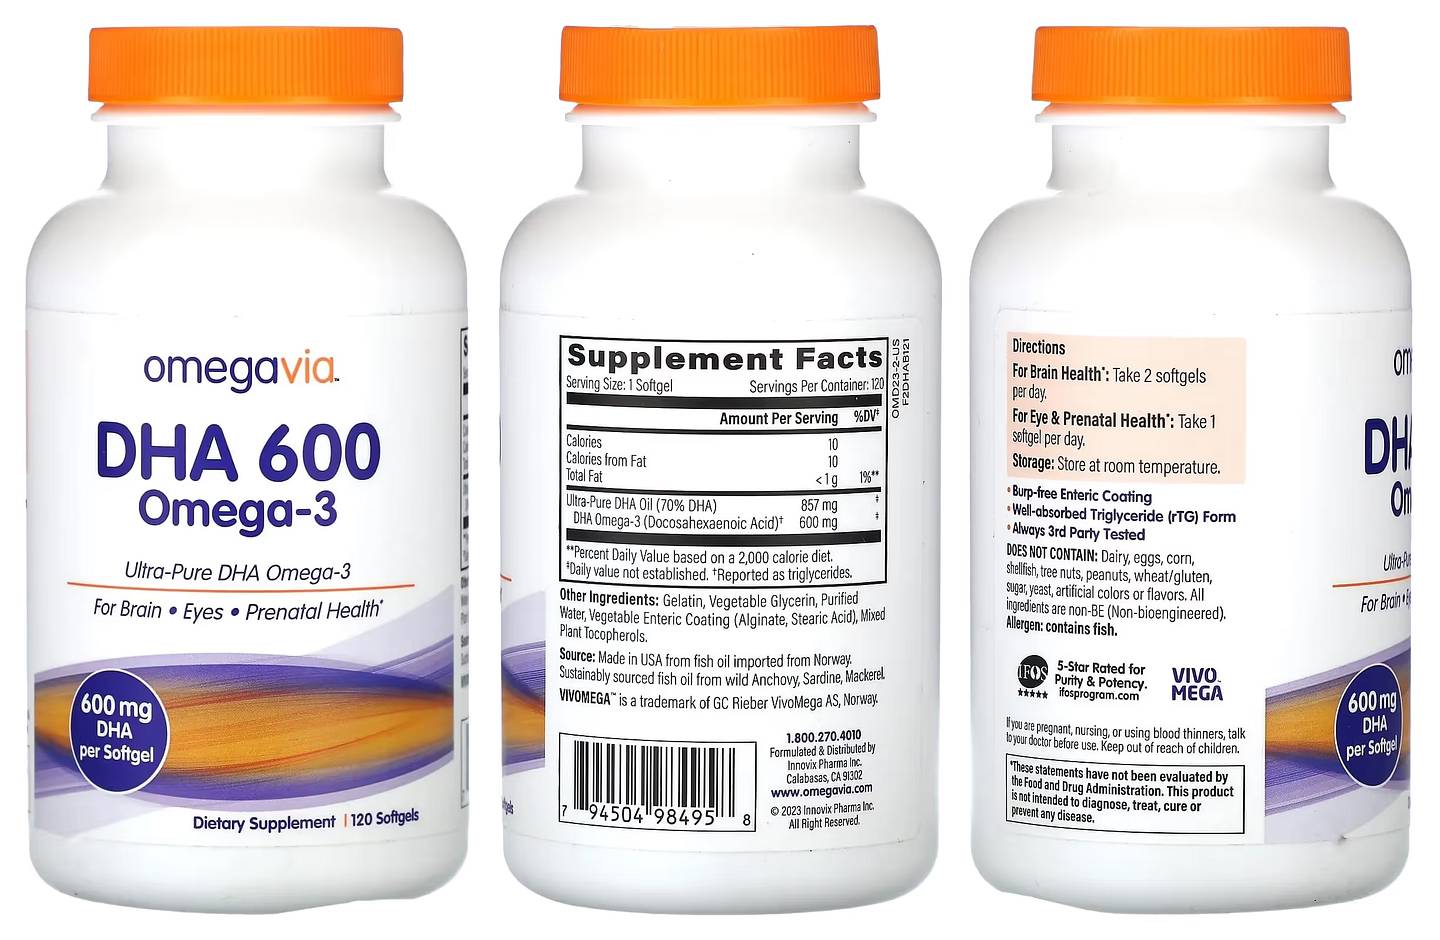 OmegaVia, DHA 600, Omega-3 packaging